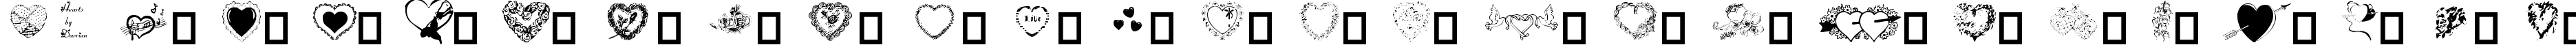 Пример написания английского алфавита шрифтом Hearts by Darrian